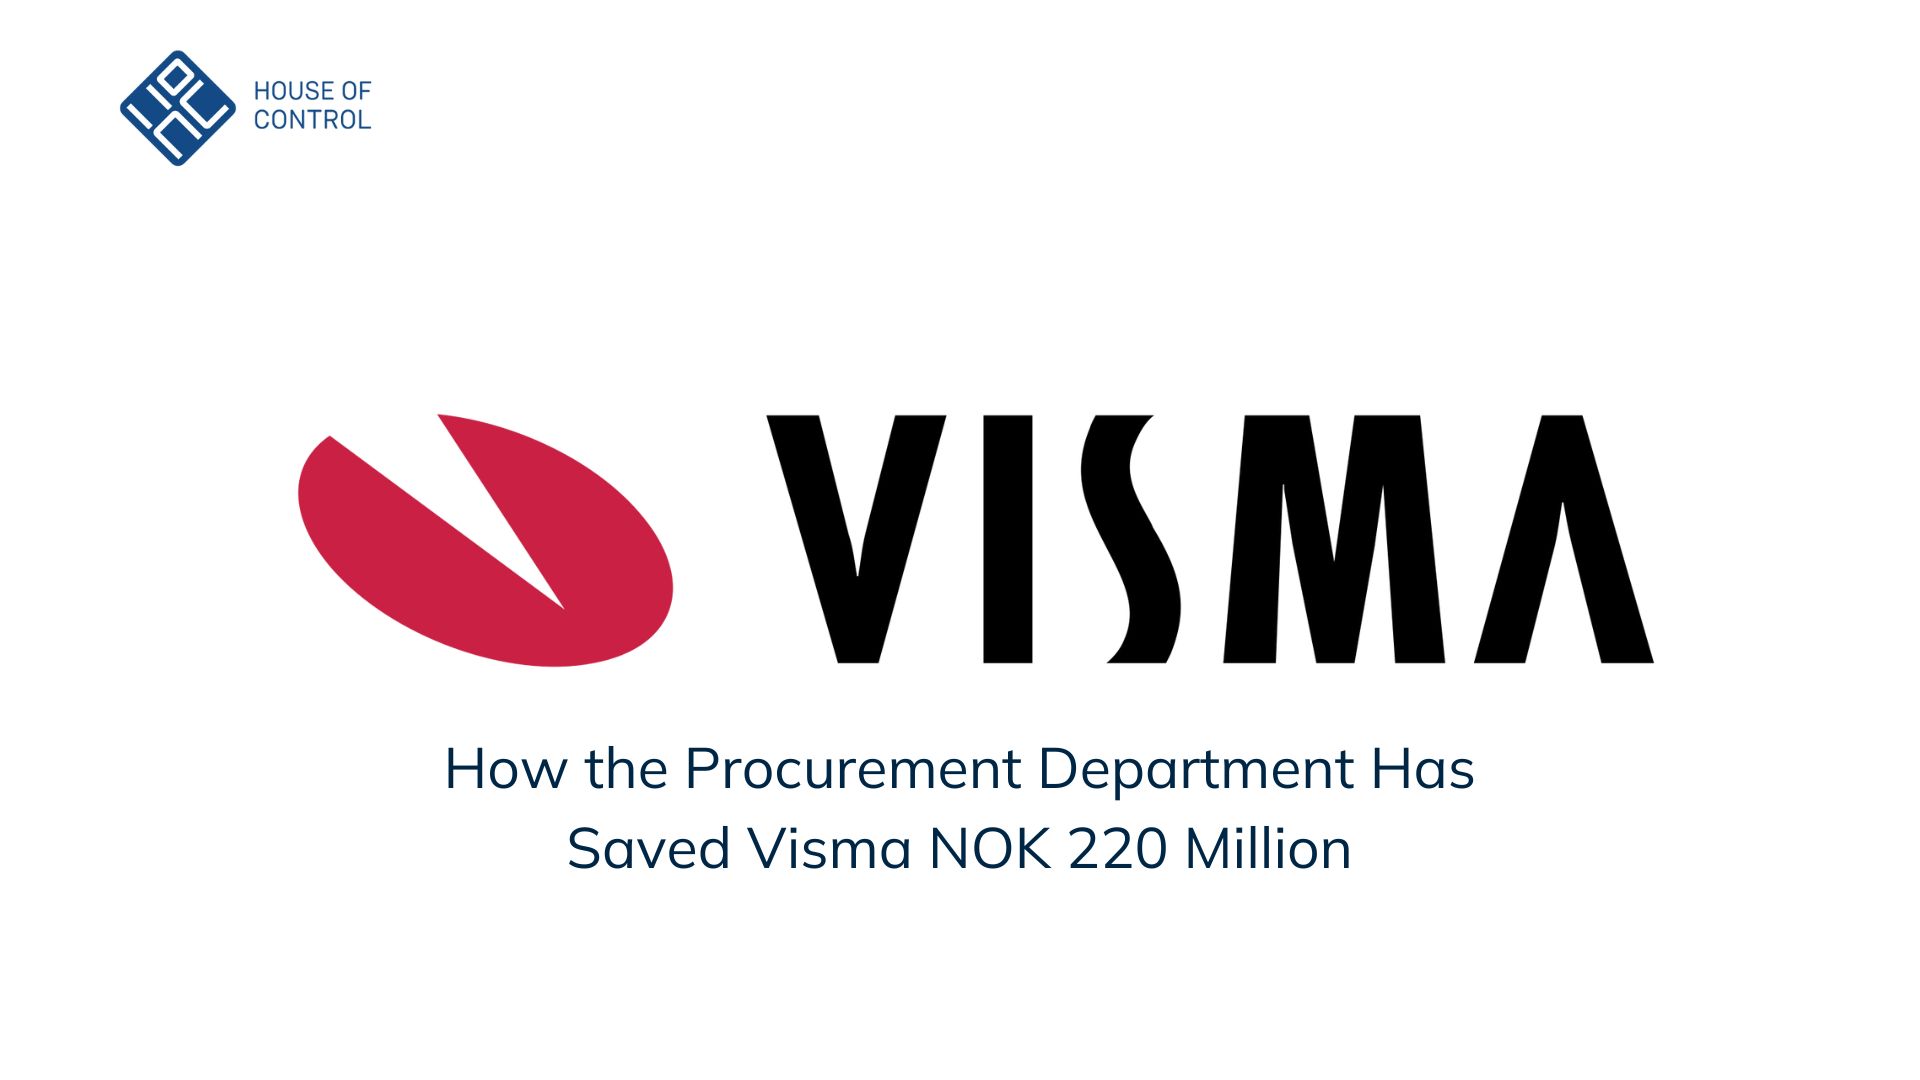 Visma - How the Procurement Department Has Saved Visma NOK 220 Million
